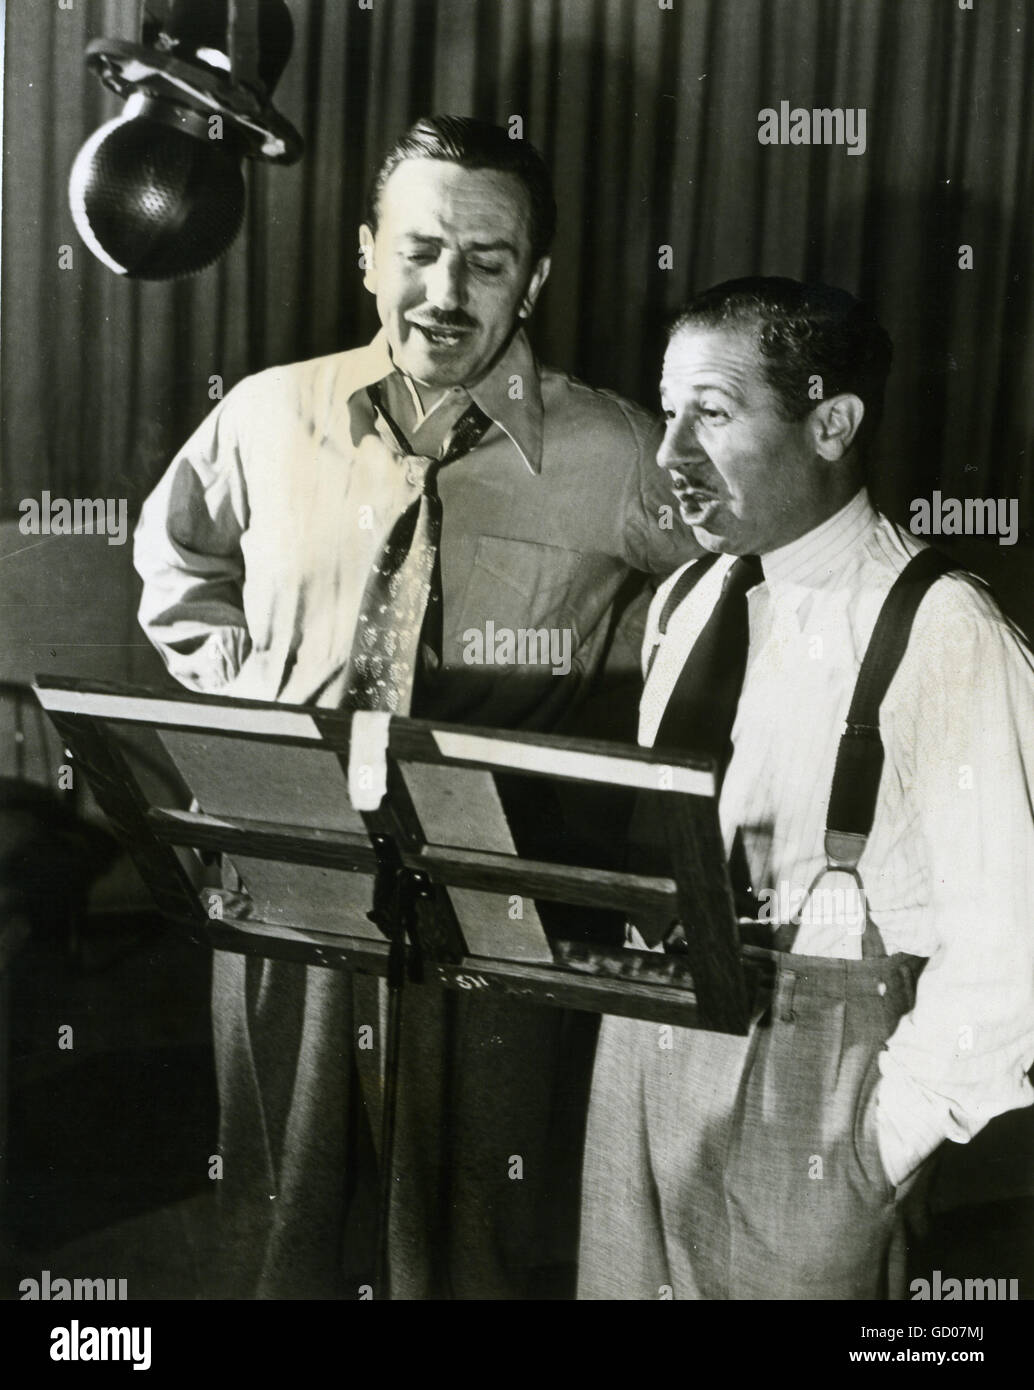 Wenn Stimme Stimme - trifft stoppt Walt Disney, wer immer Mickey-Mouse-Linien liefert, in einem Ton Raum mit Clarence Nash, die Stimme von Donald Duck zu chatten. Stockfoto